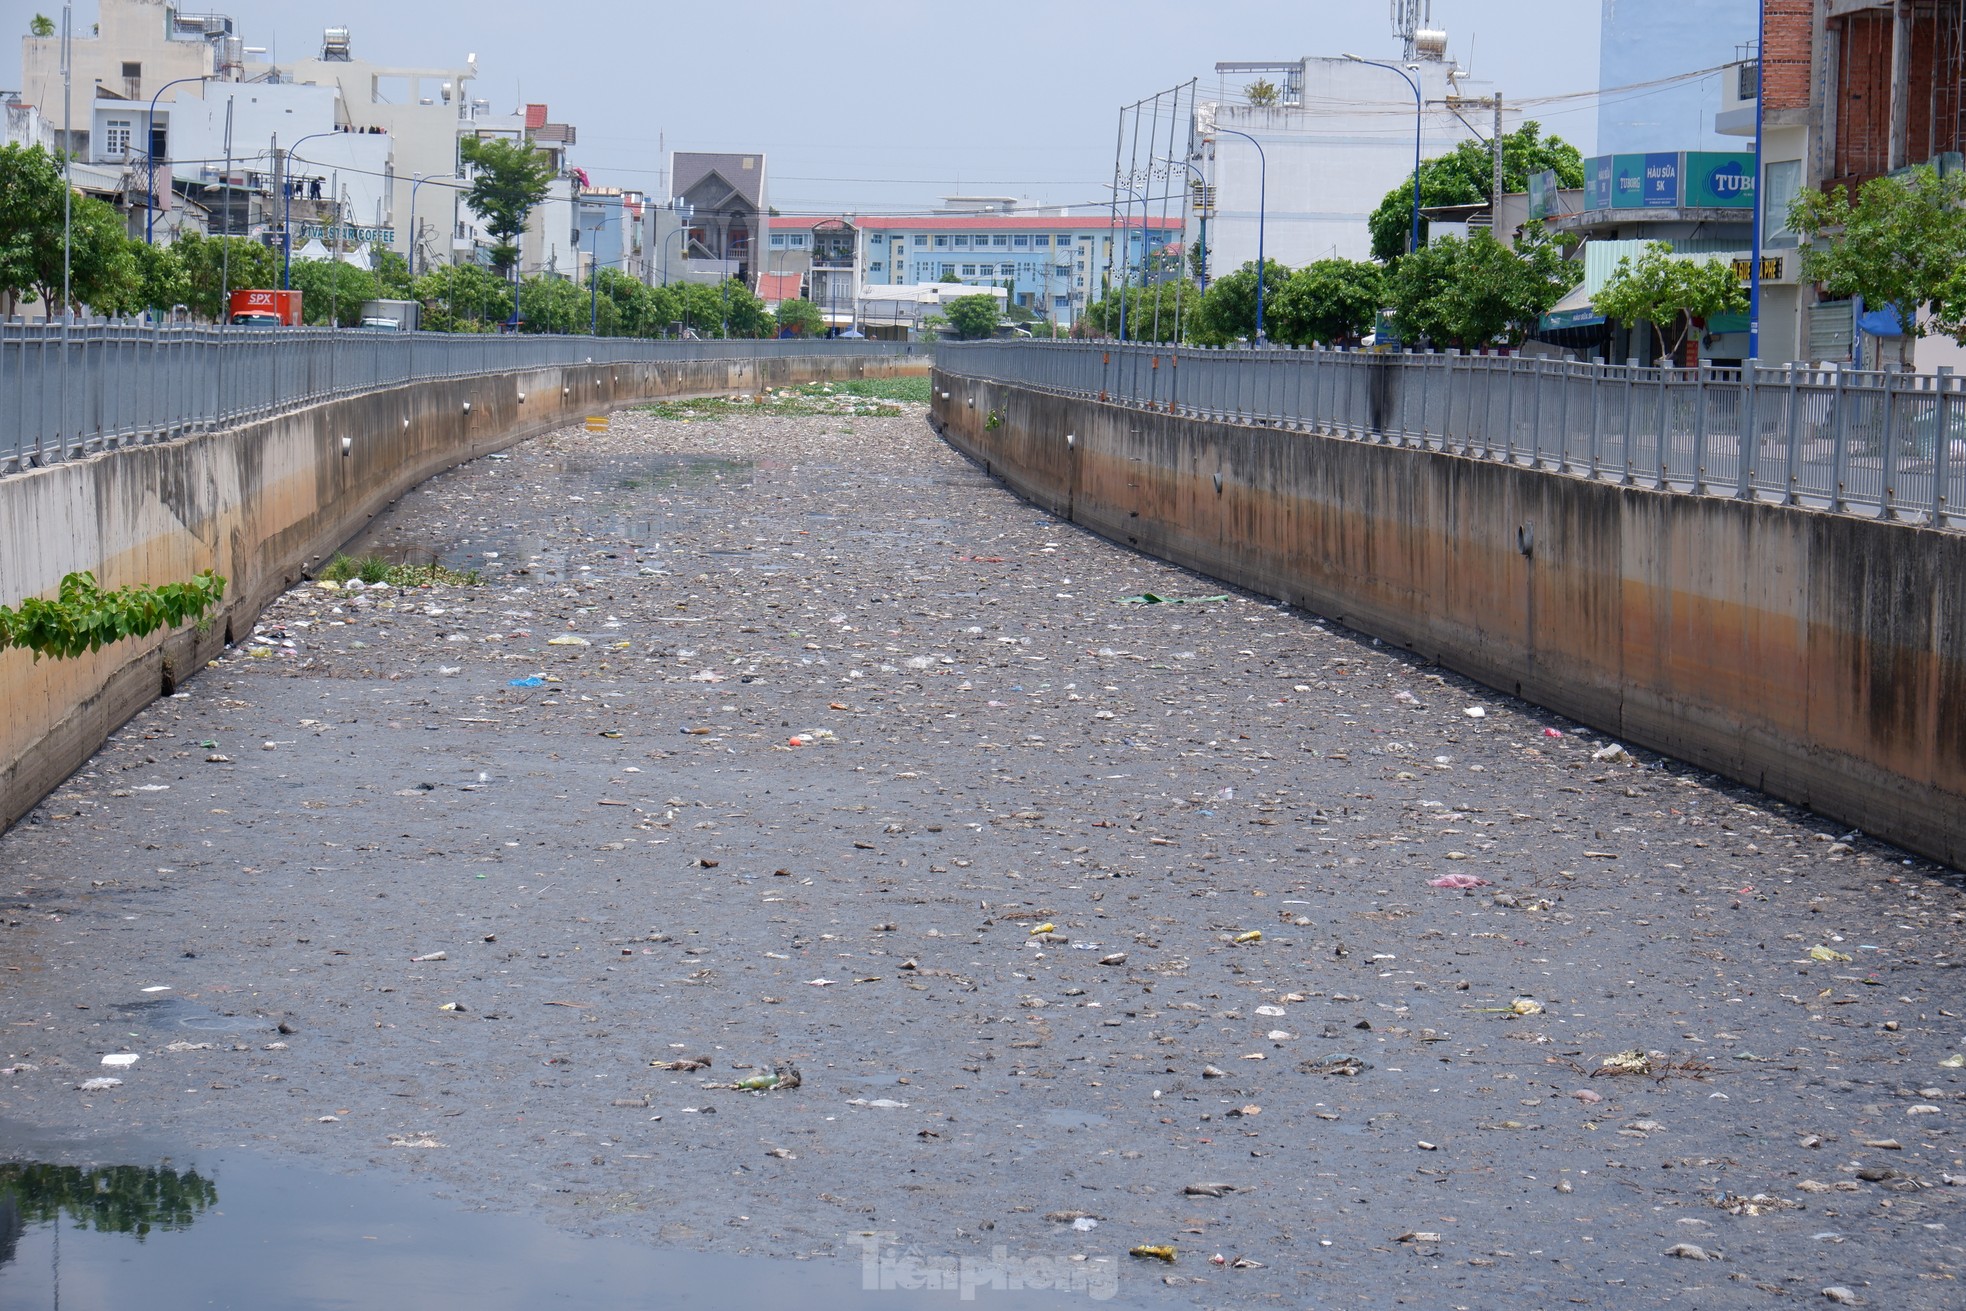 Sau 2 năm cải tạo với hơn 600 tỷ đồng, kênh Nước Đen lại ngập ngụa rác - Ảnh 4.